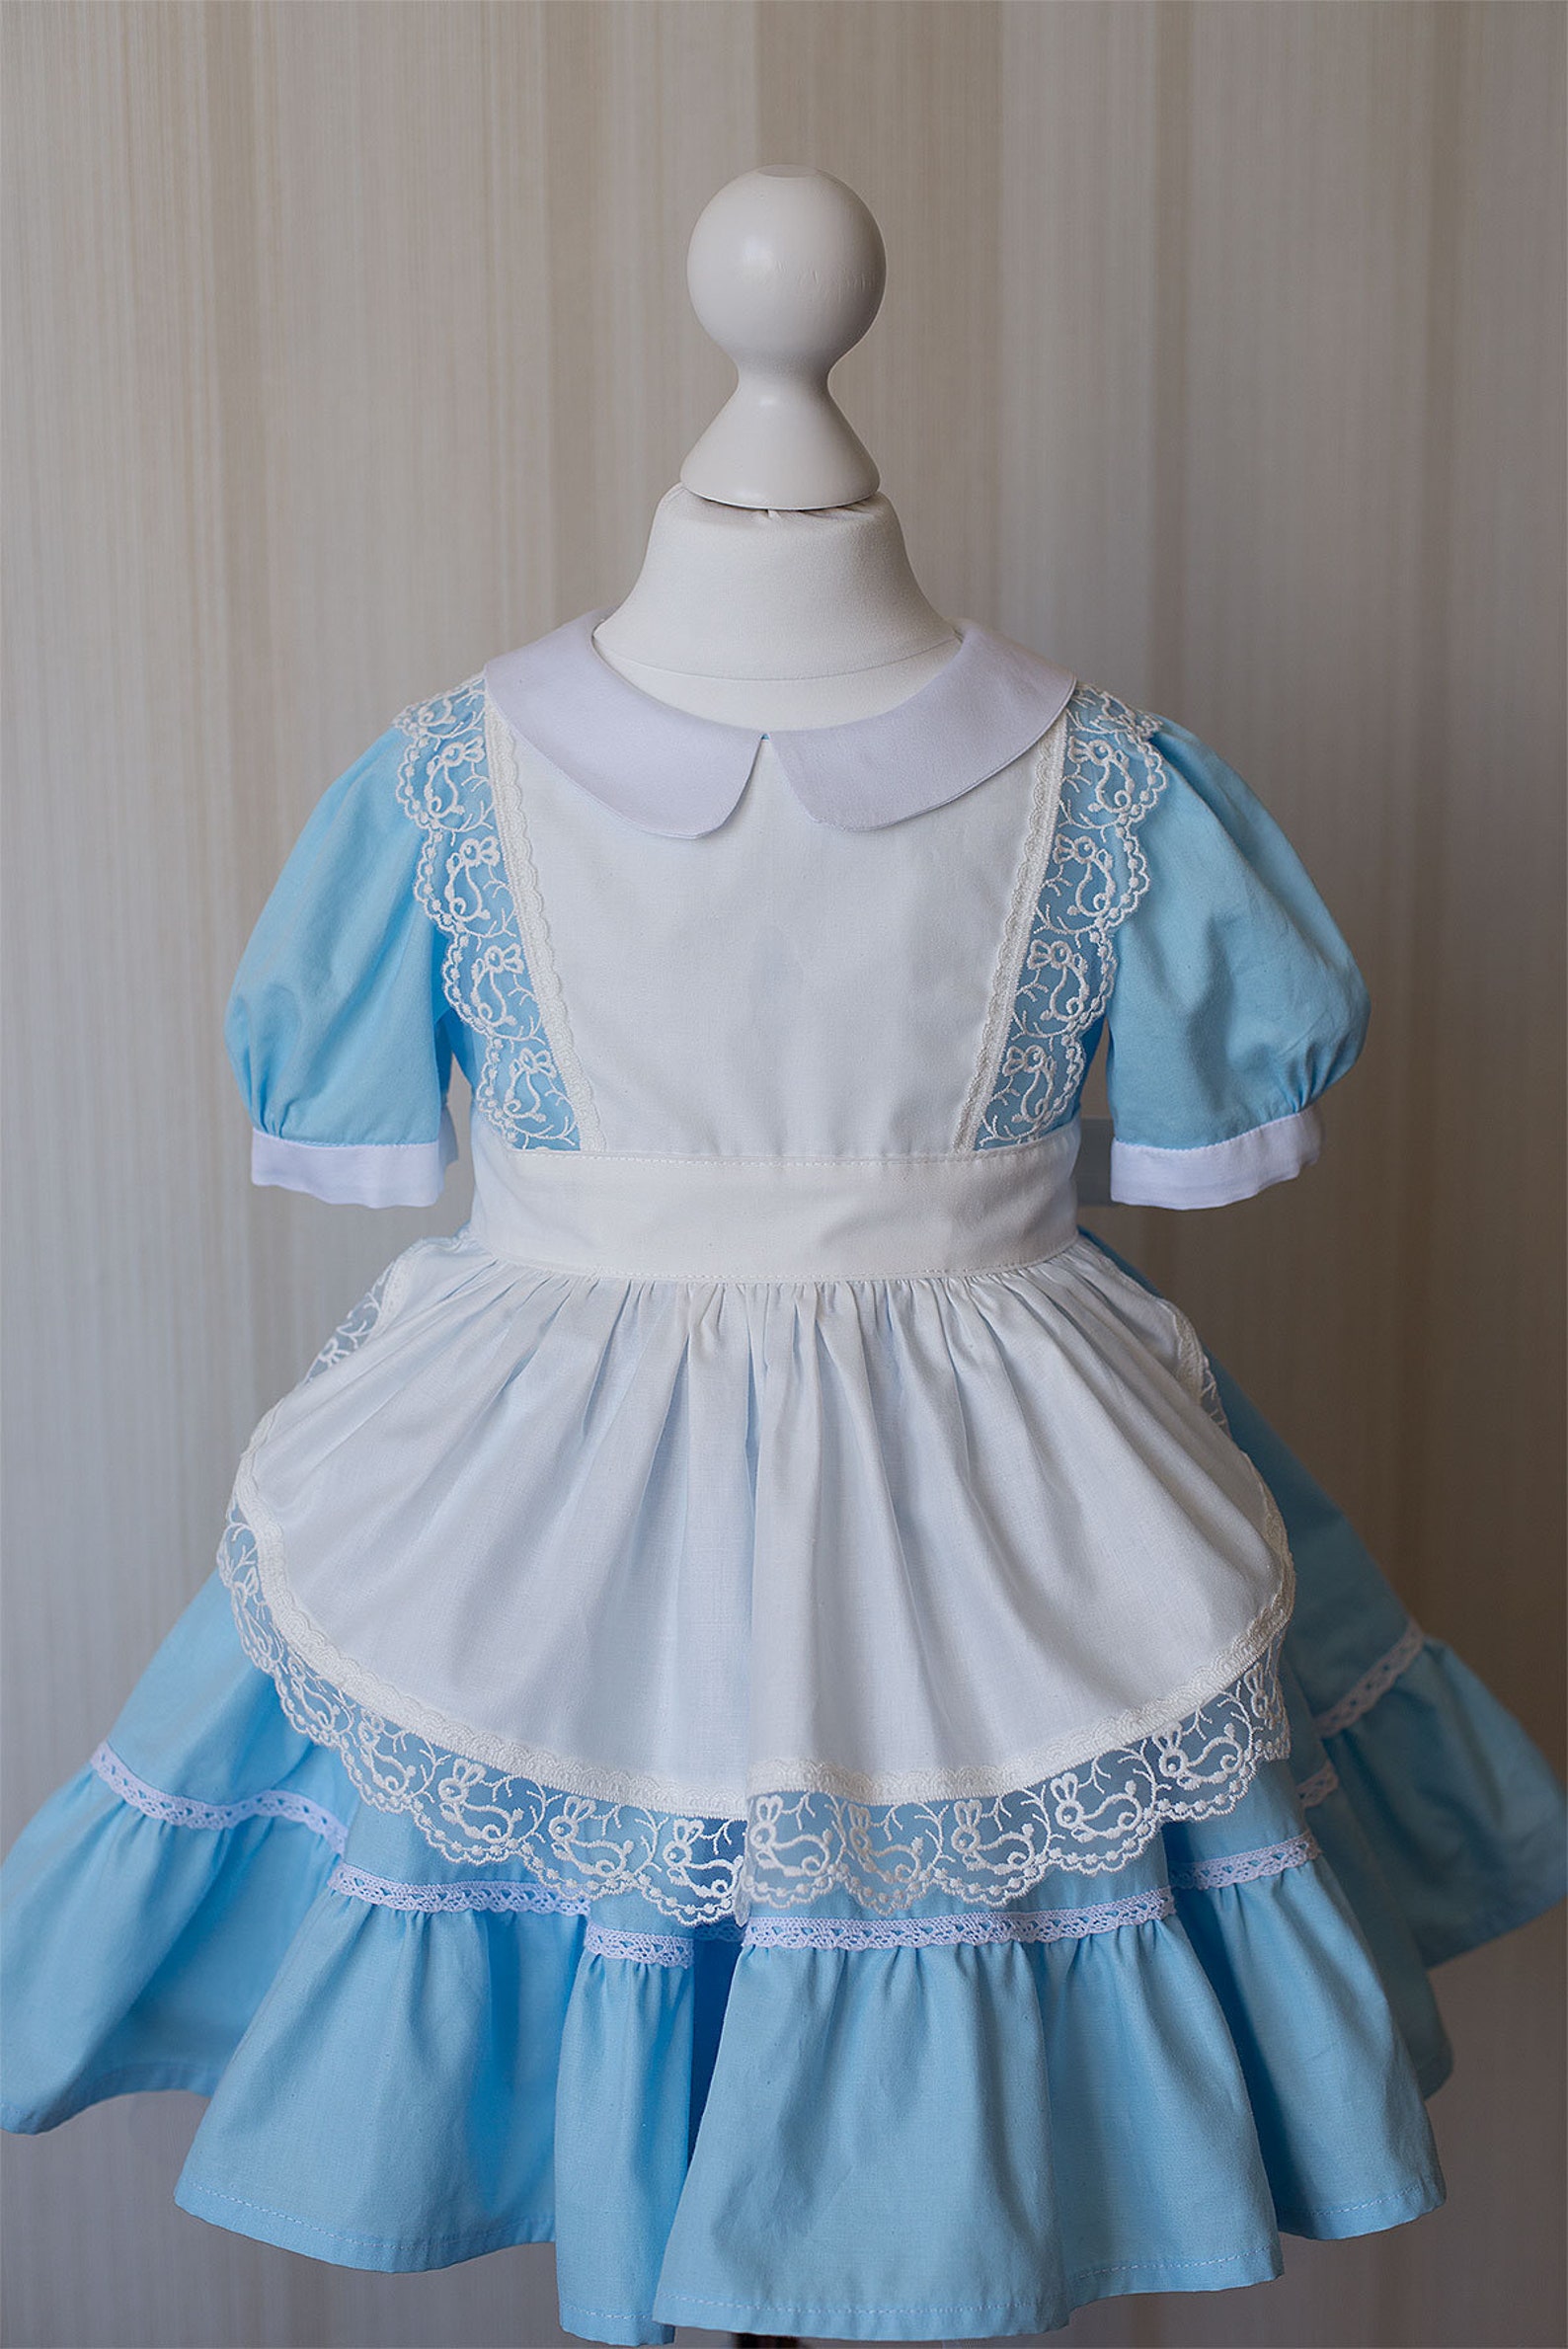 Alice in Wonderland Baby Girl Costume Blue Dress for - Etsy